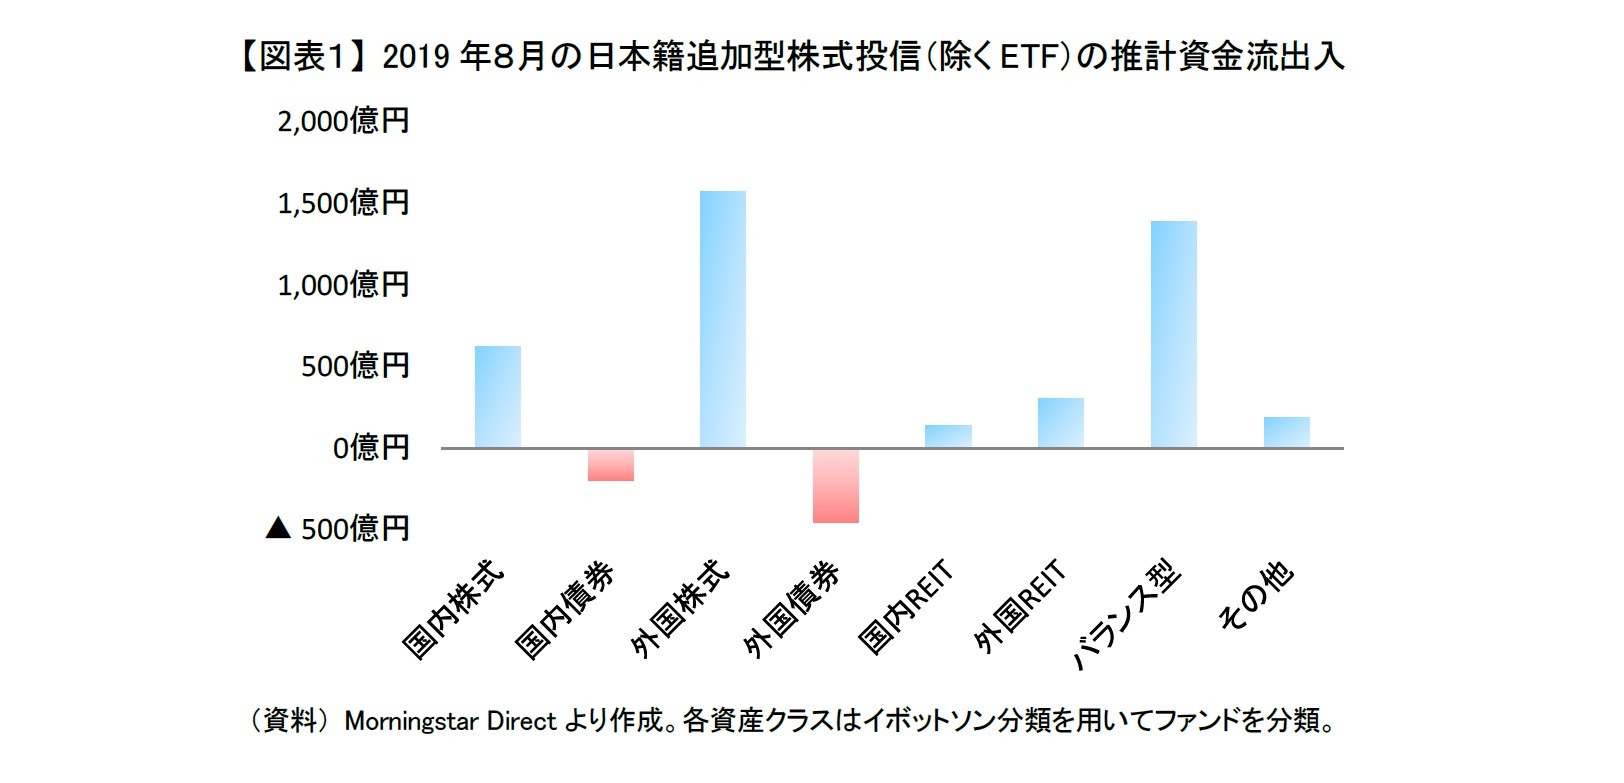 【図表１】 2019年８月の日本籍追加型株式投信（除くETF）の推計資金流出入